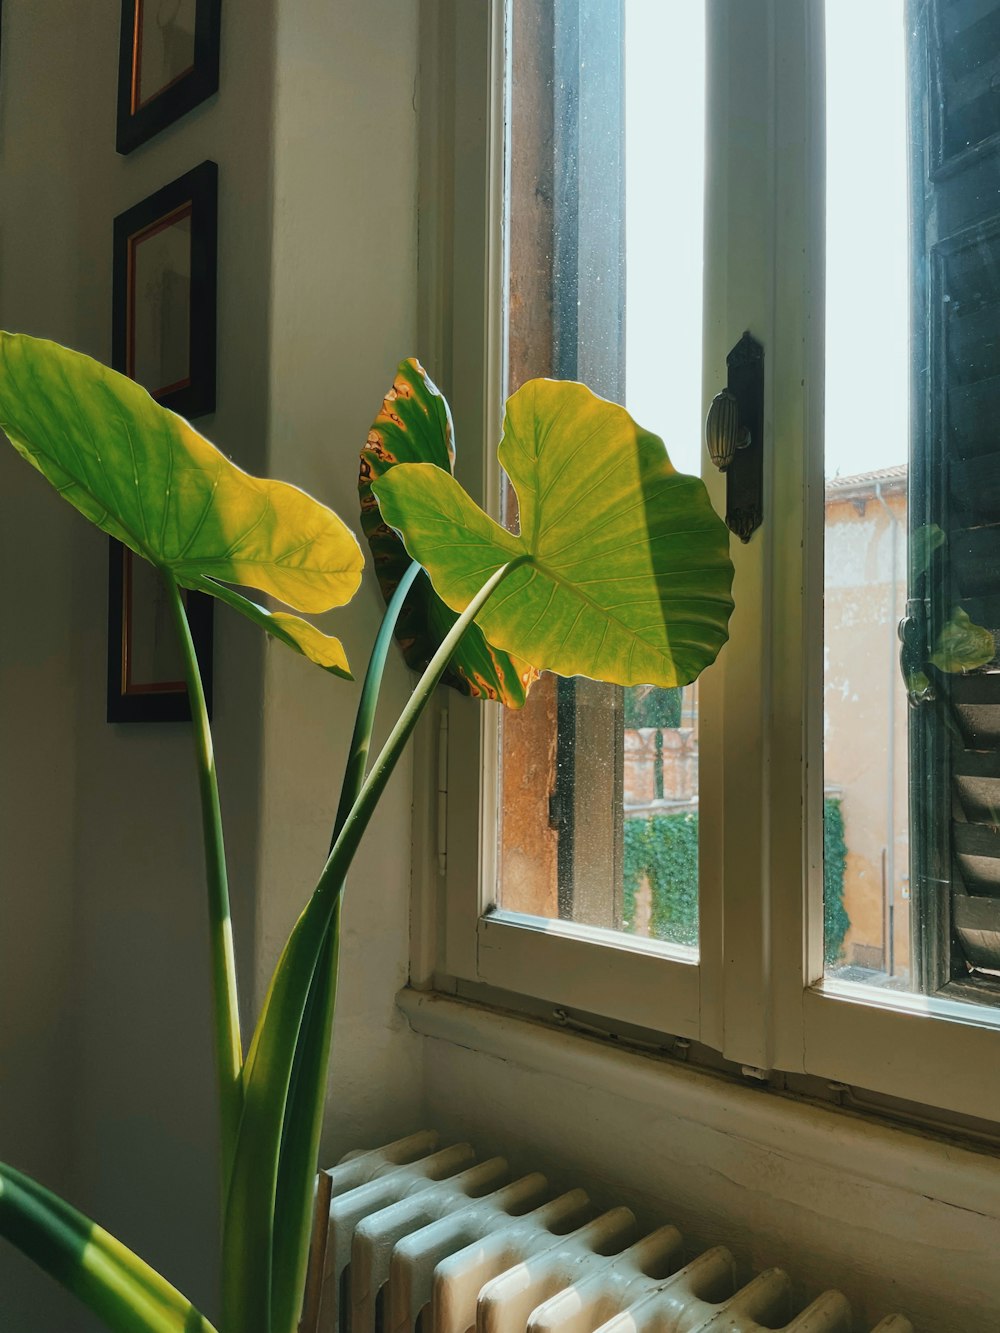 창문 앞에 앉아있는 큰 녹색 식물